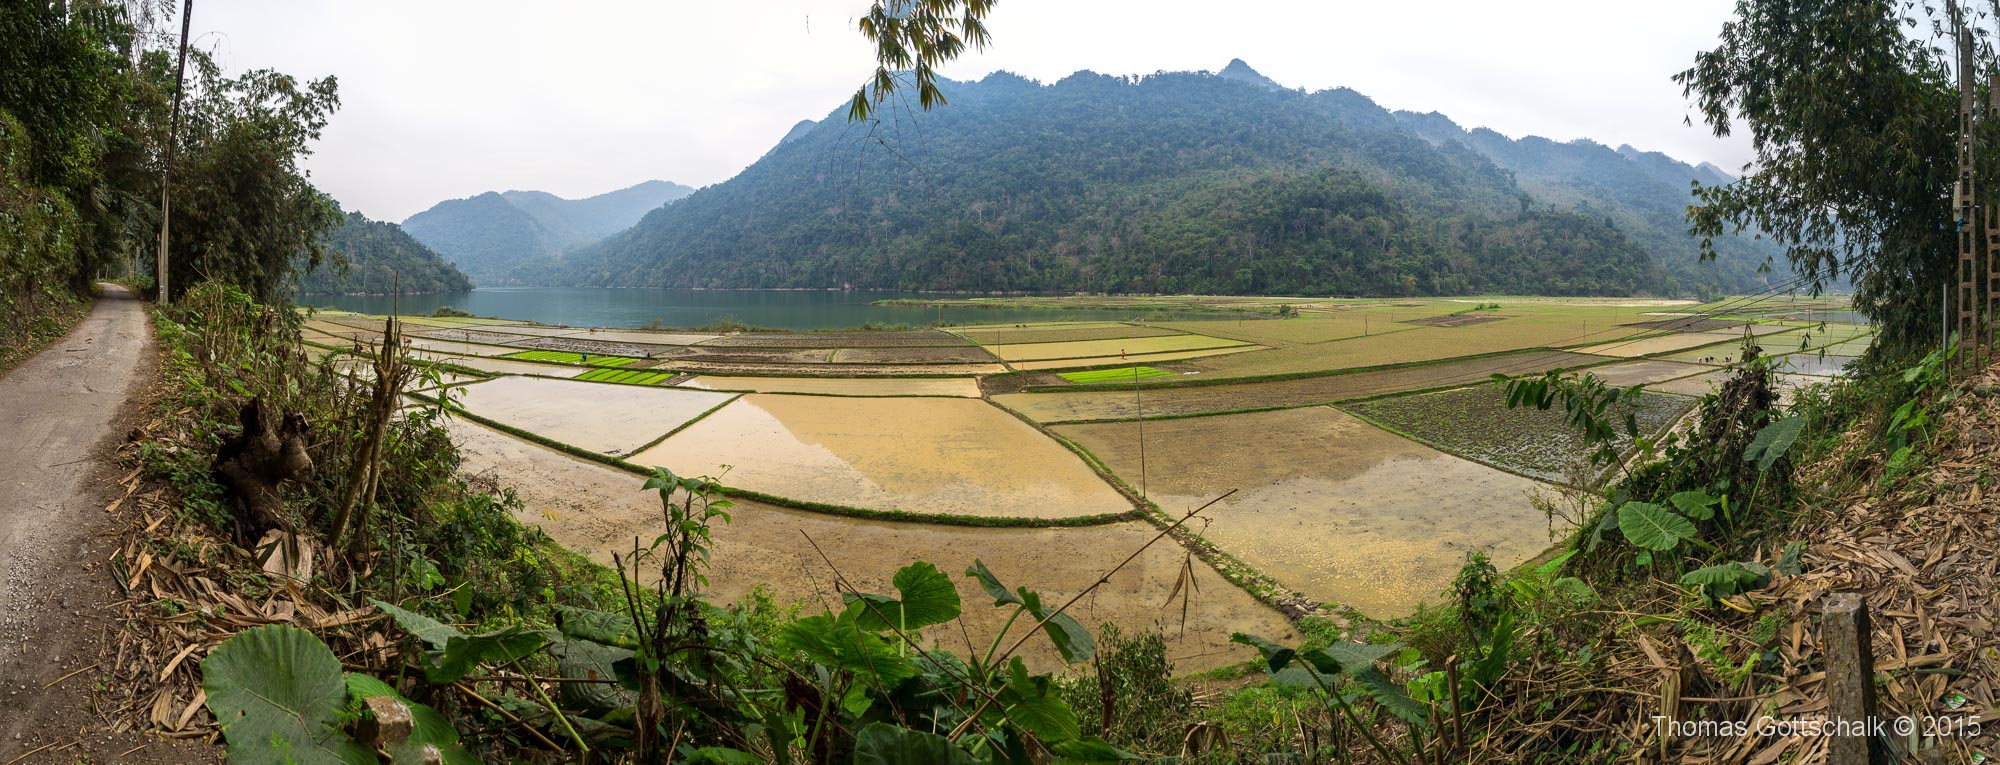 Vietnam Panoramas-16.jpg